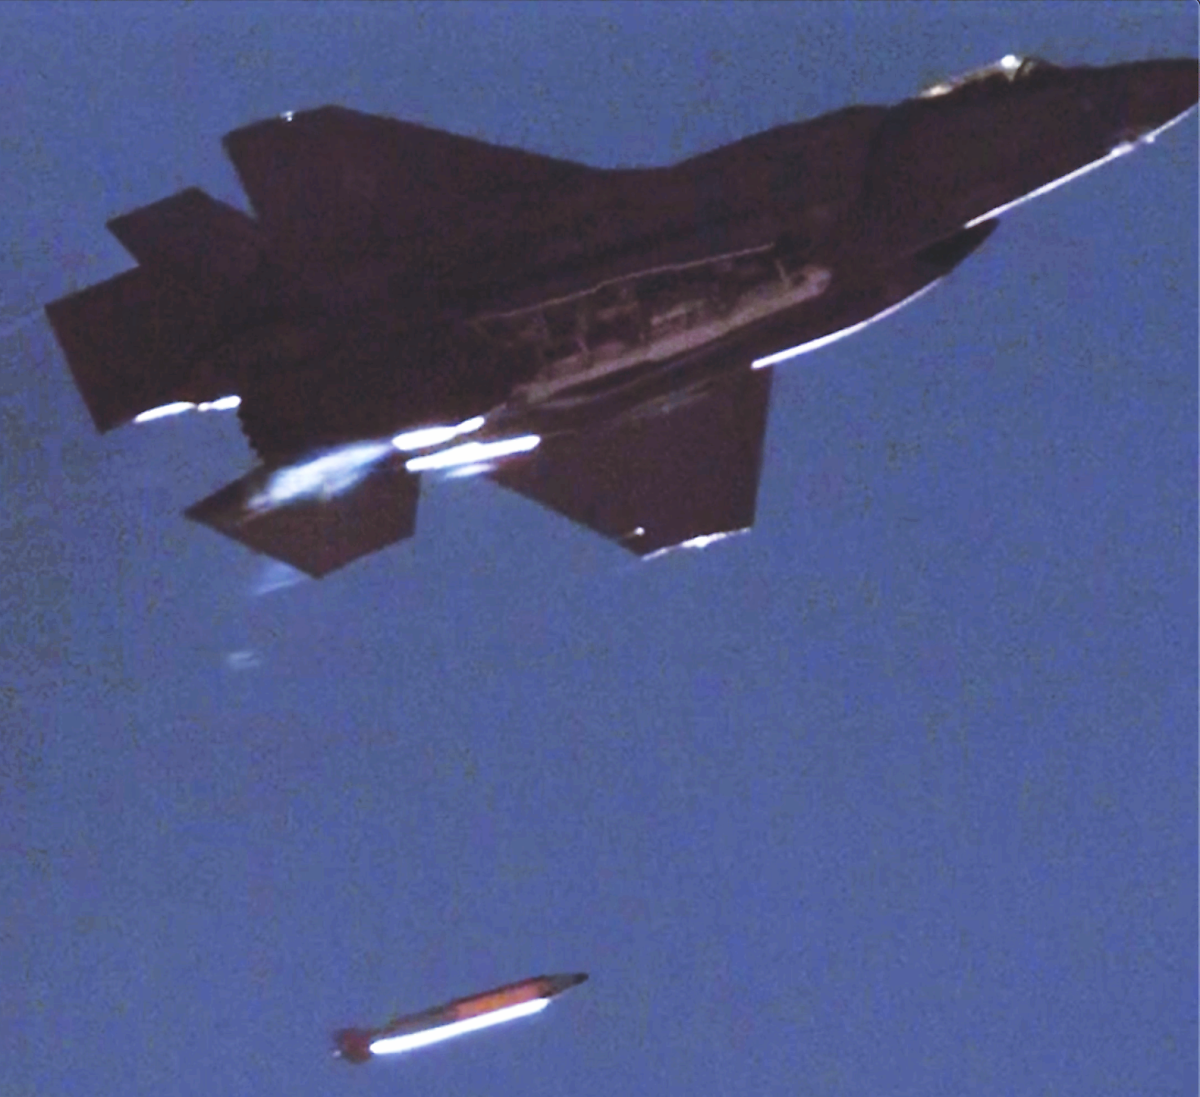 킬체인은 신속히 등장한 핵심표적을 찾아내어 제거하는 작전을 가리킨다. 사진은 미 공군 F-35A 스텔스 전투기의 B61 Mod 12 전술핵폭탄 투하장면이다. <출처: US Air Force>